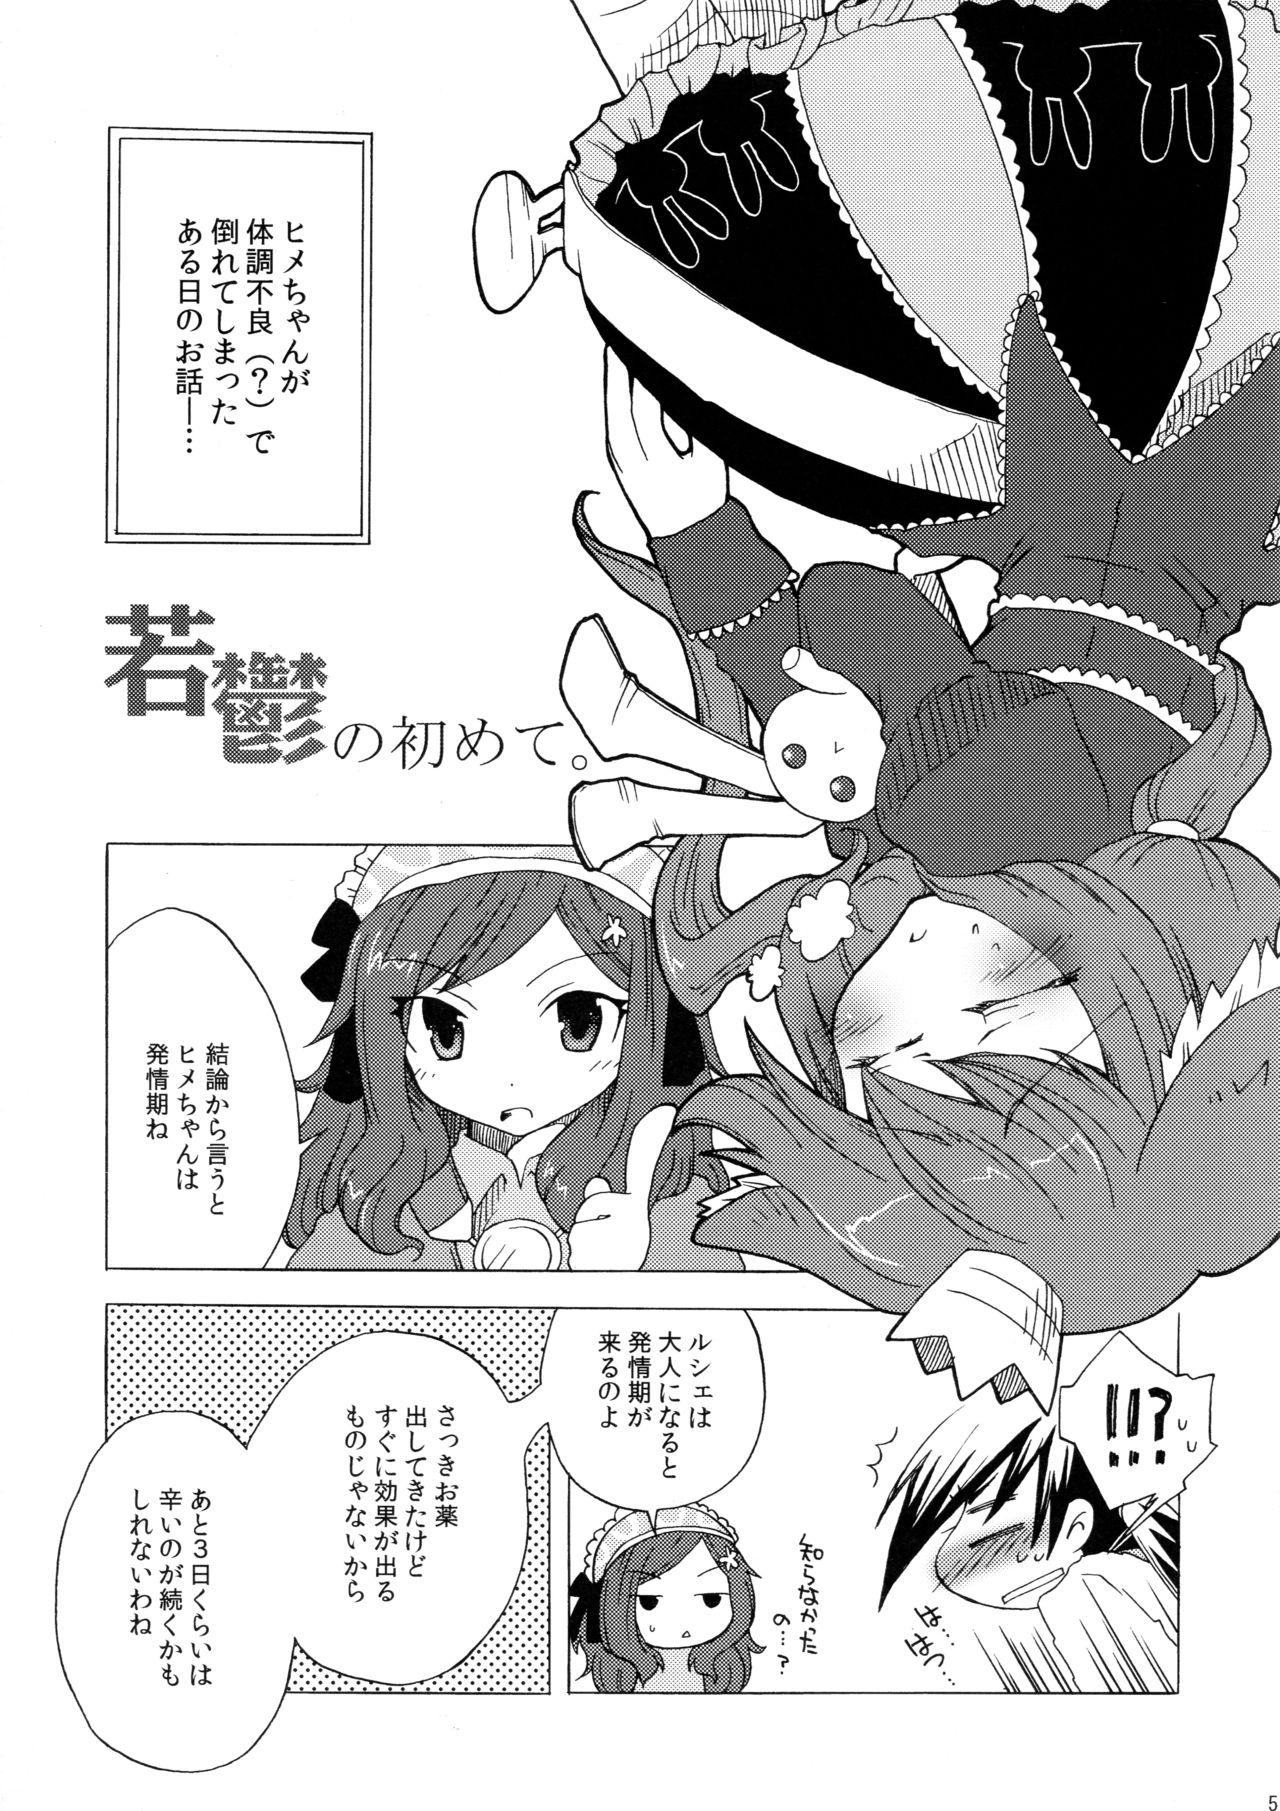 Pica Waka Utsu no Hajimete. - 7th dragon Hung - Page 5